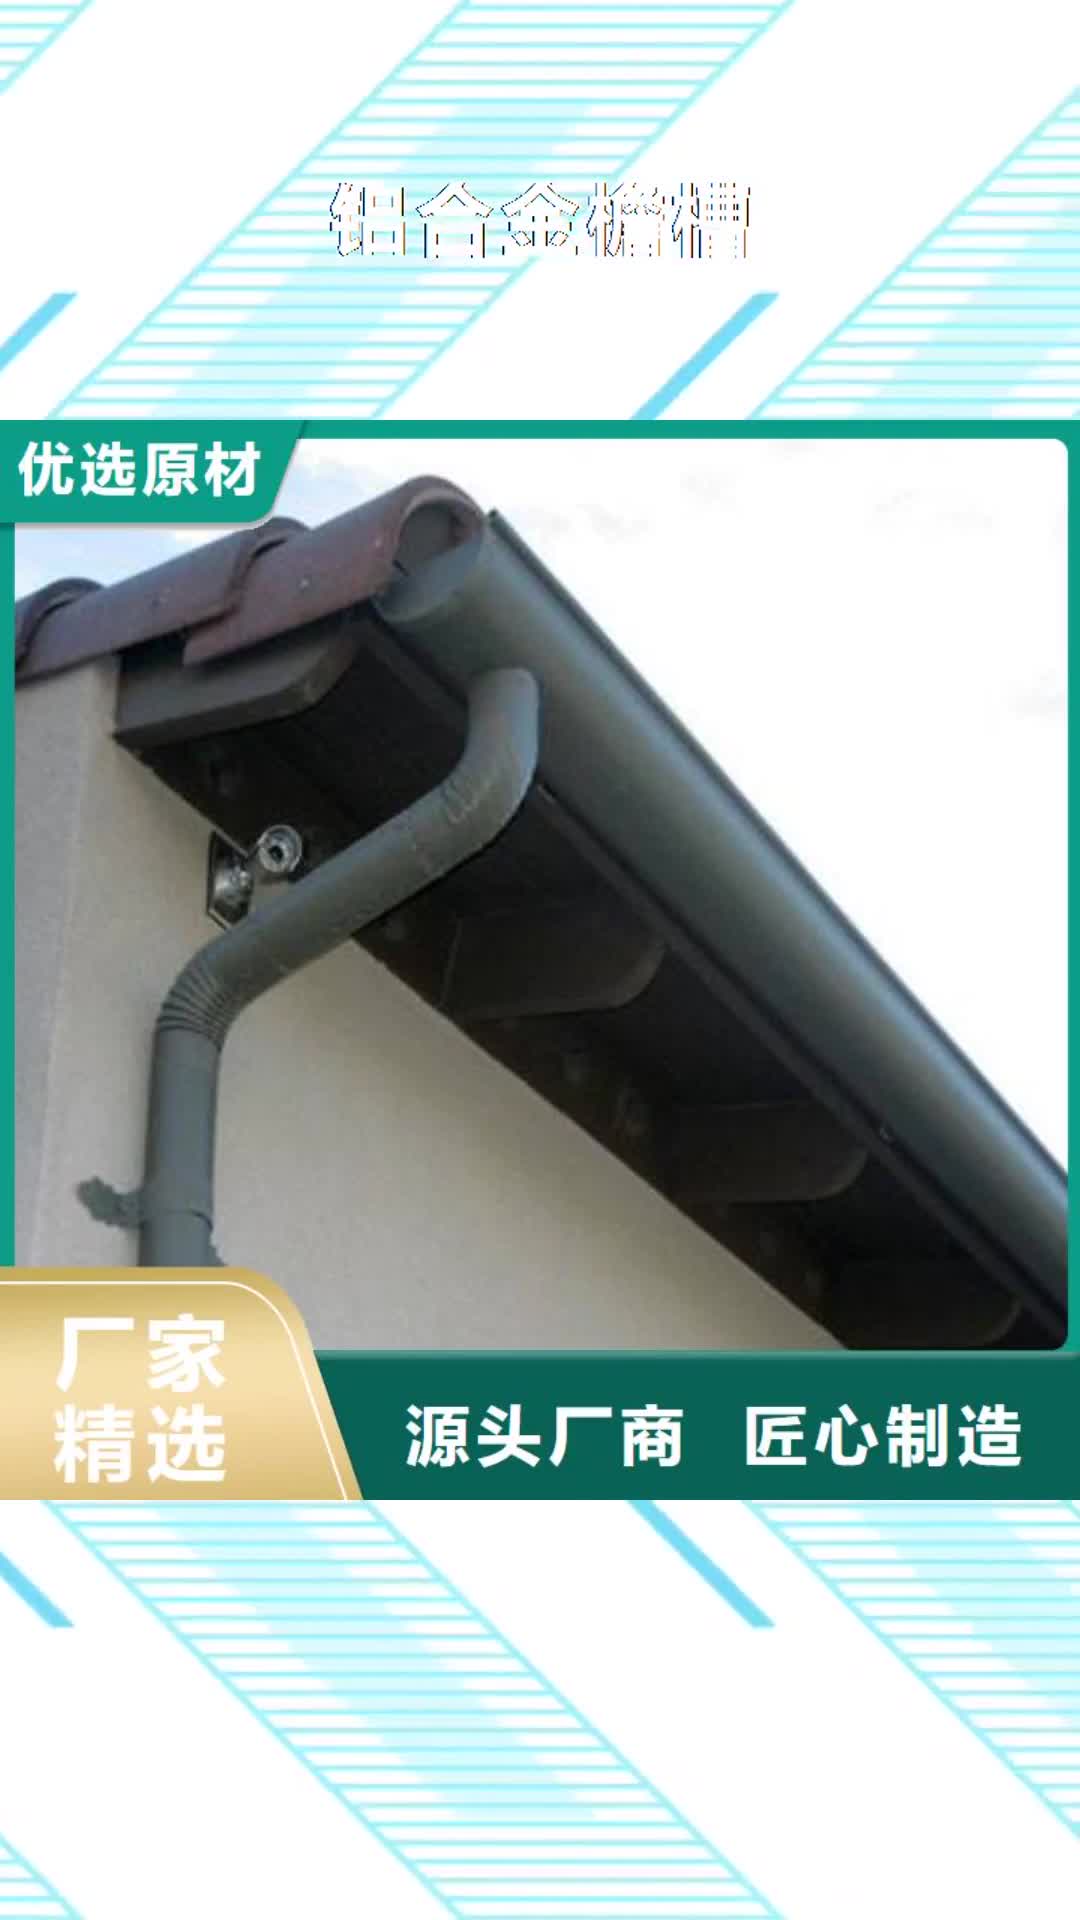 防城港【铝合金檐槽】-PVC雨水管助您降低采购成本